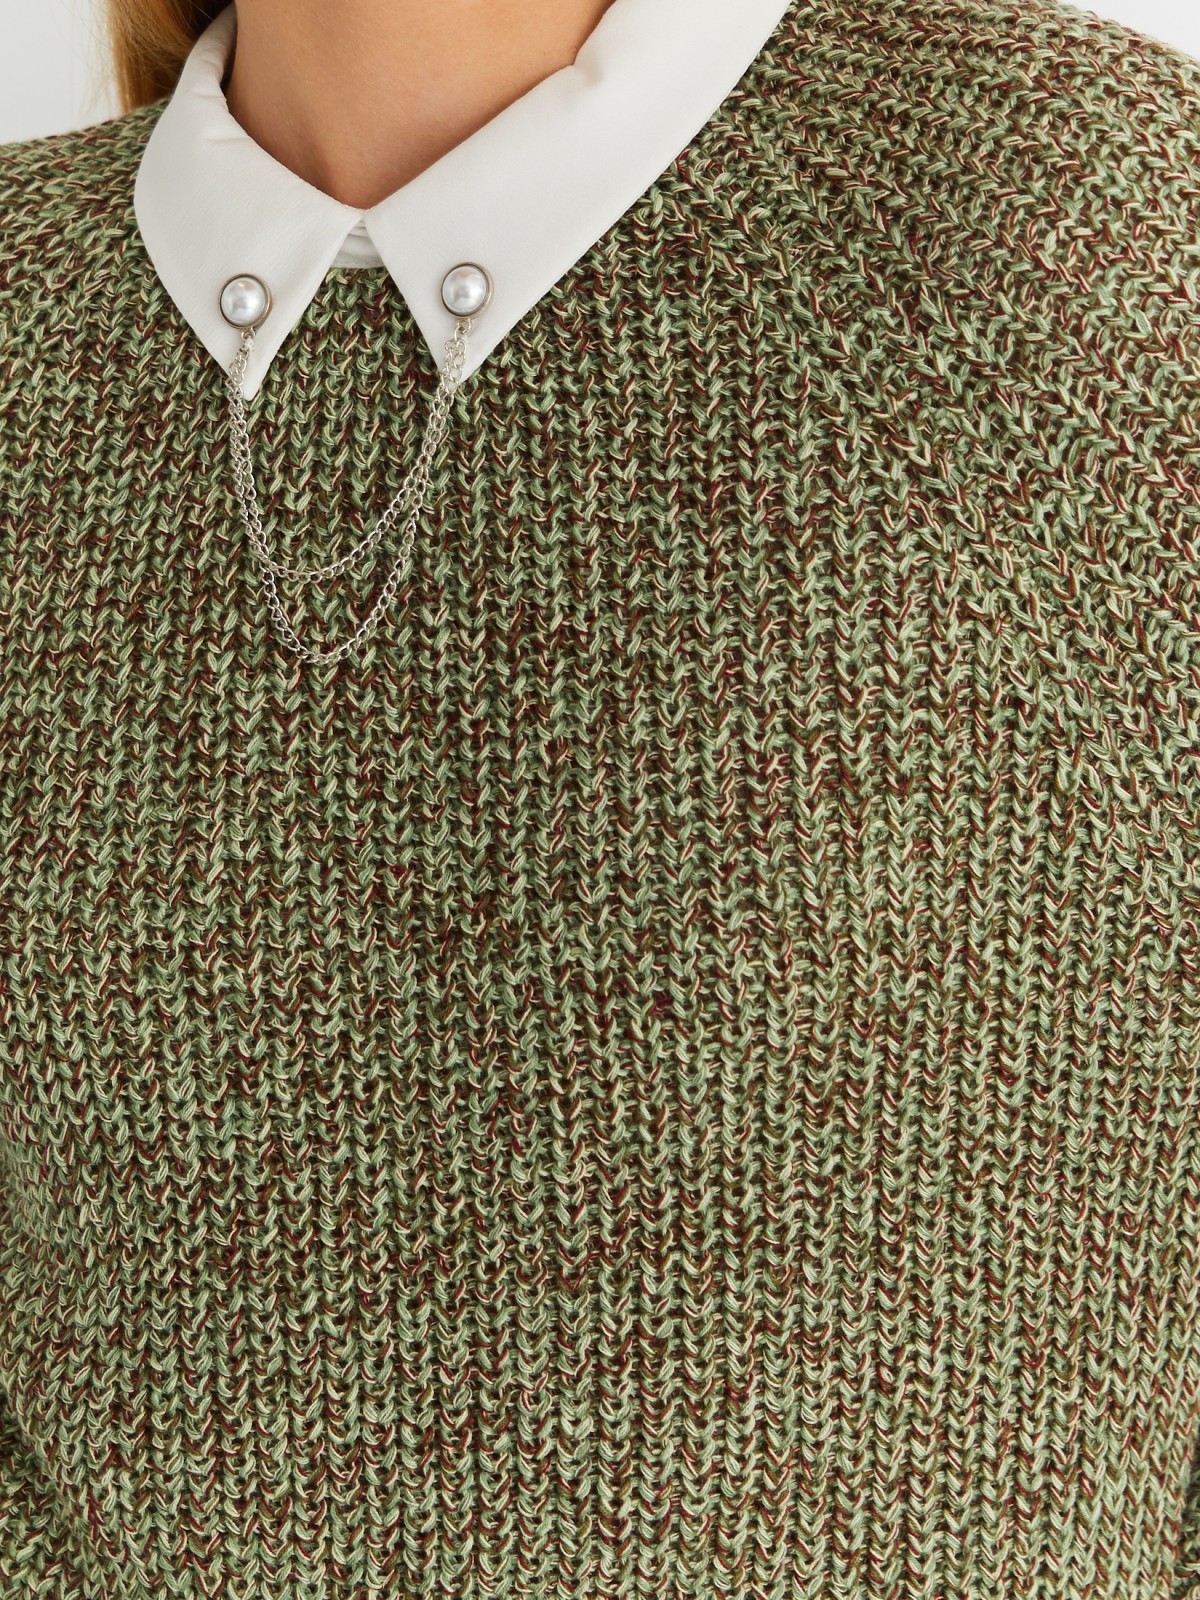 Комбинированный вязаный джемпер с имитацией блузки zolla 023346743013, цвет хаки, размер XS - фото 4